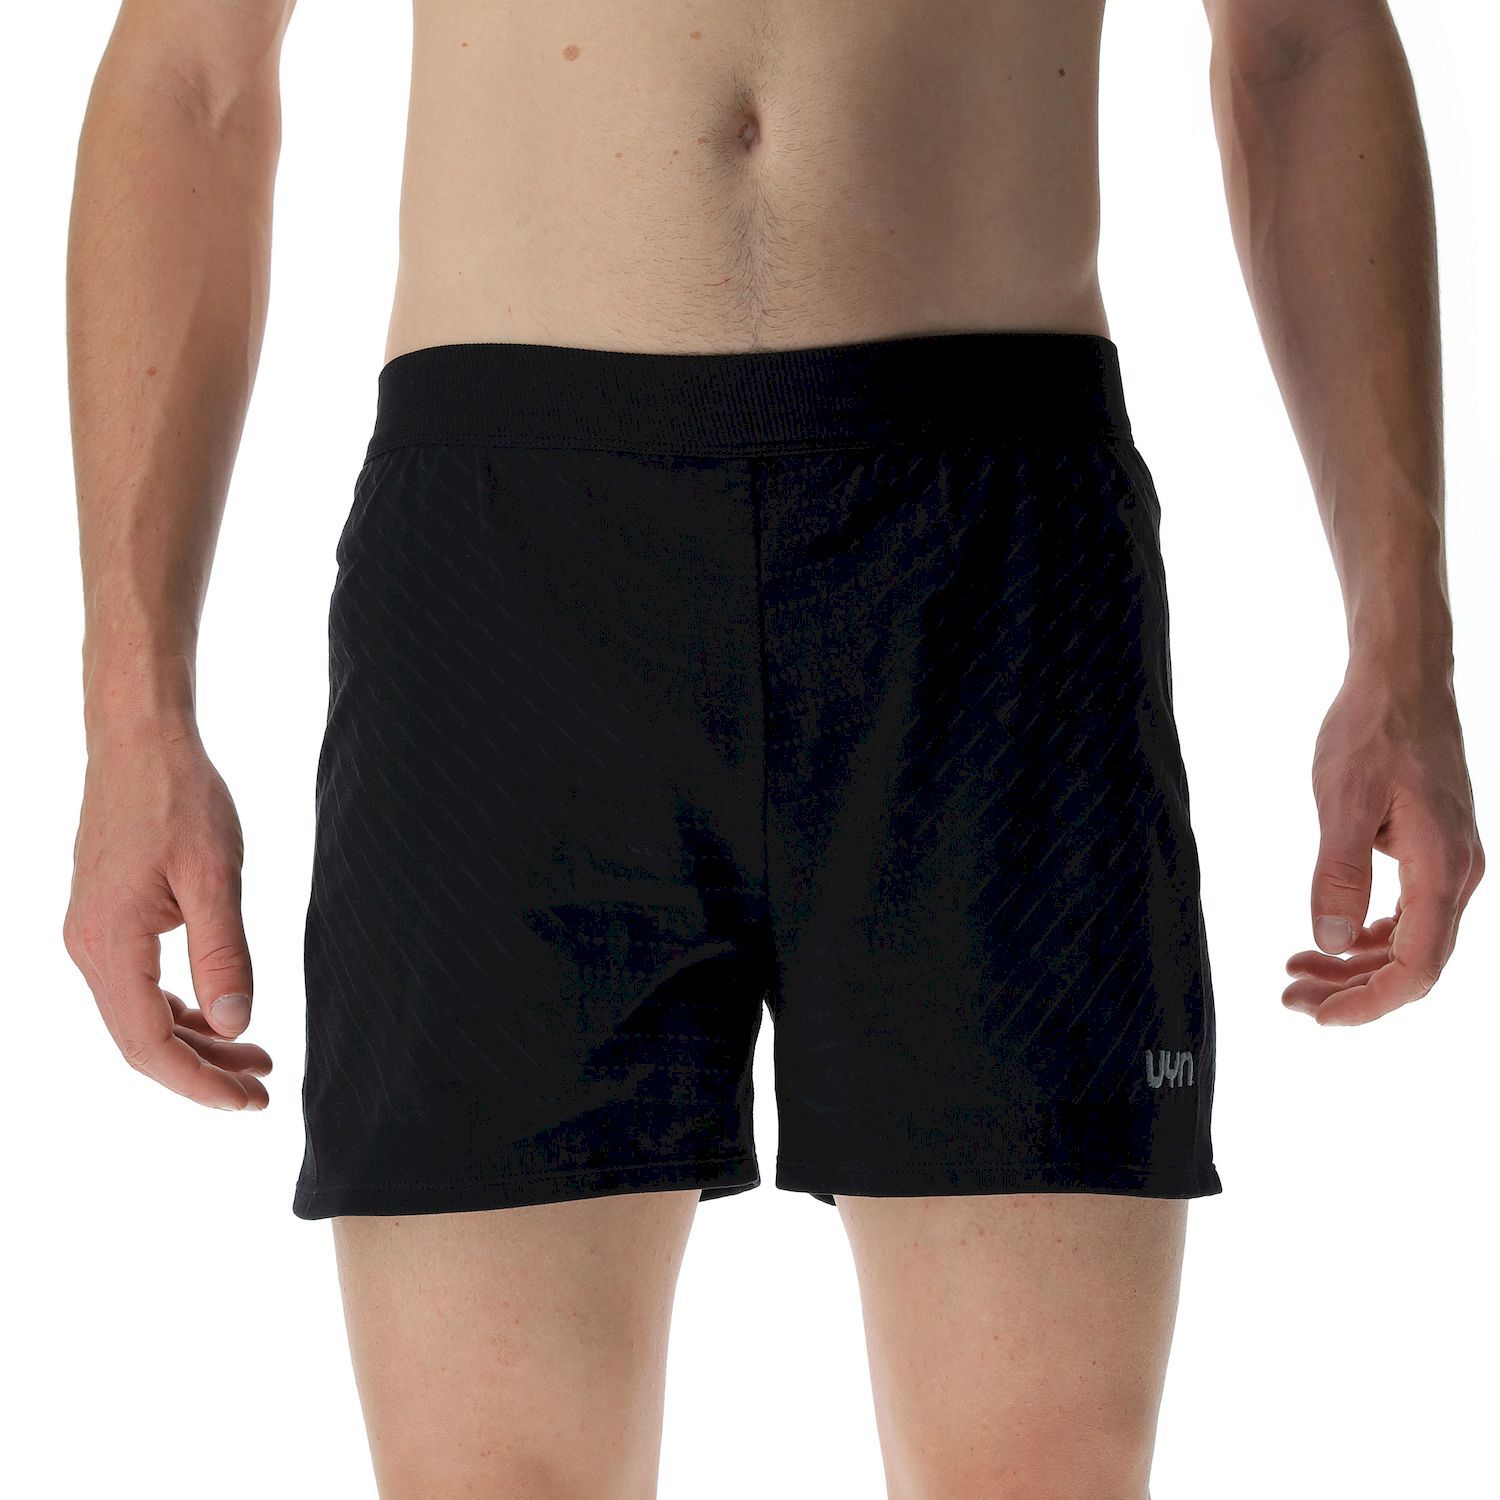 Uyn Running PB42 Ow Pants Short - Pantalones cortos de running - Hombre